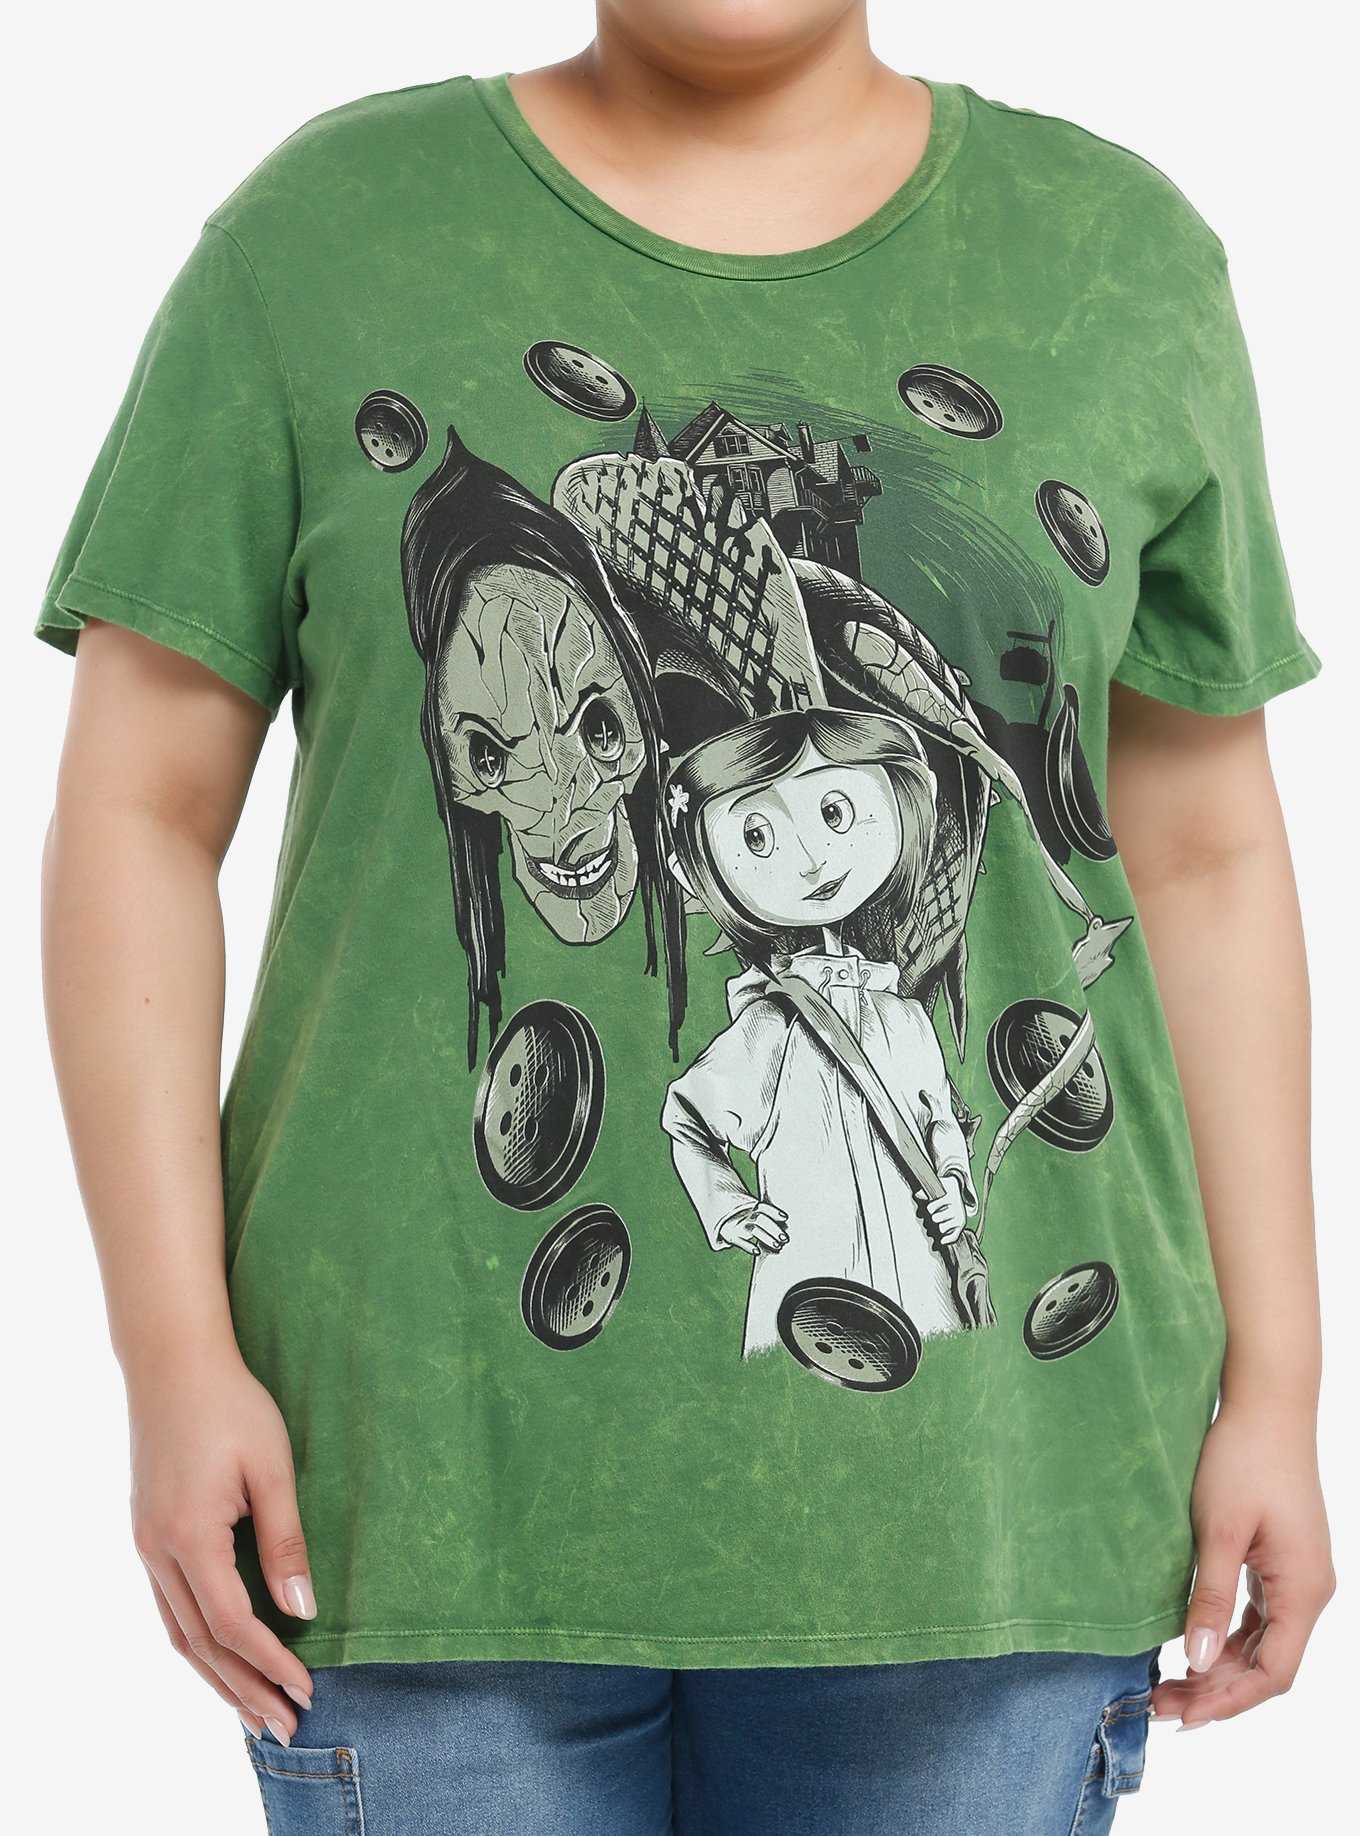 Coraline The Beldam Green Wash Boyfriend Fit Girls T-Shirt Plus Size, , hi-res